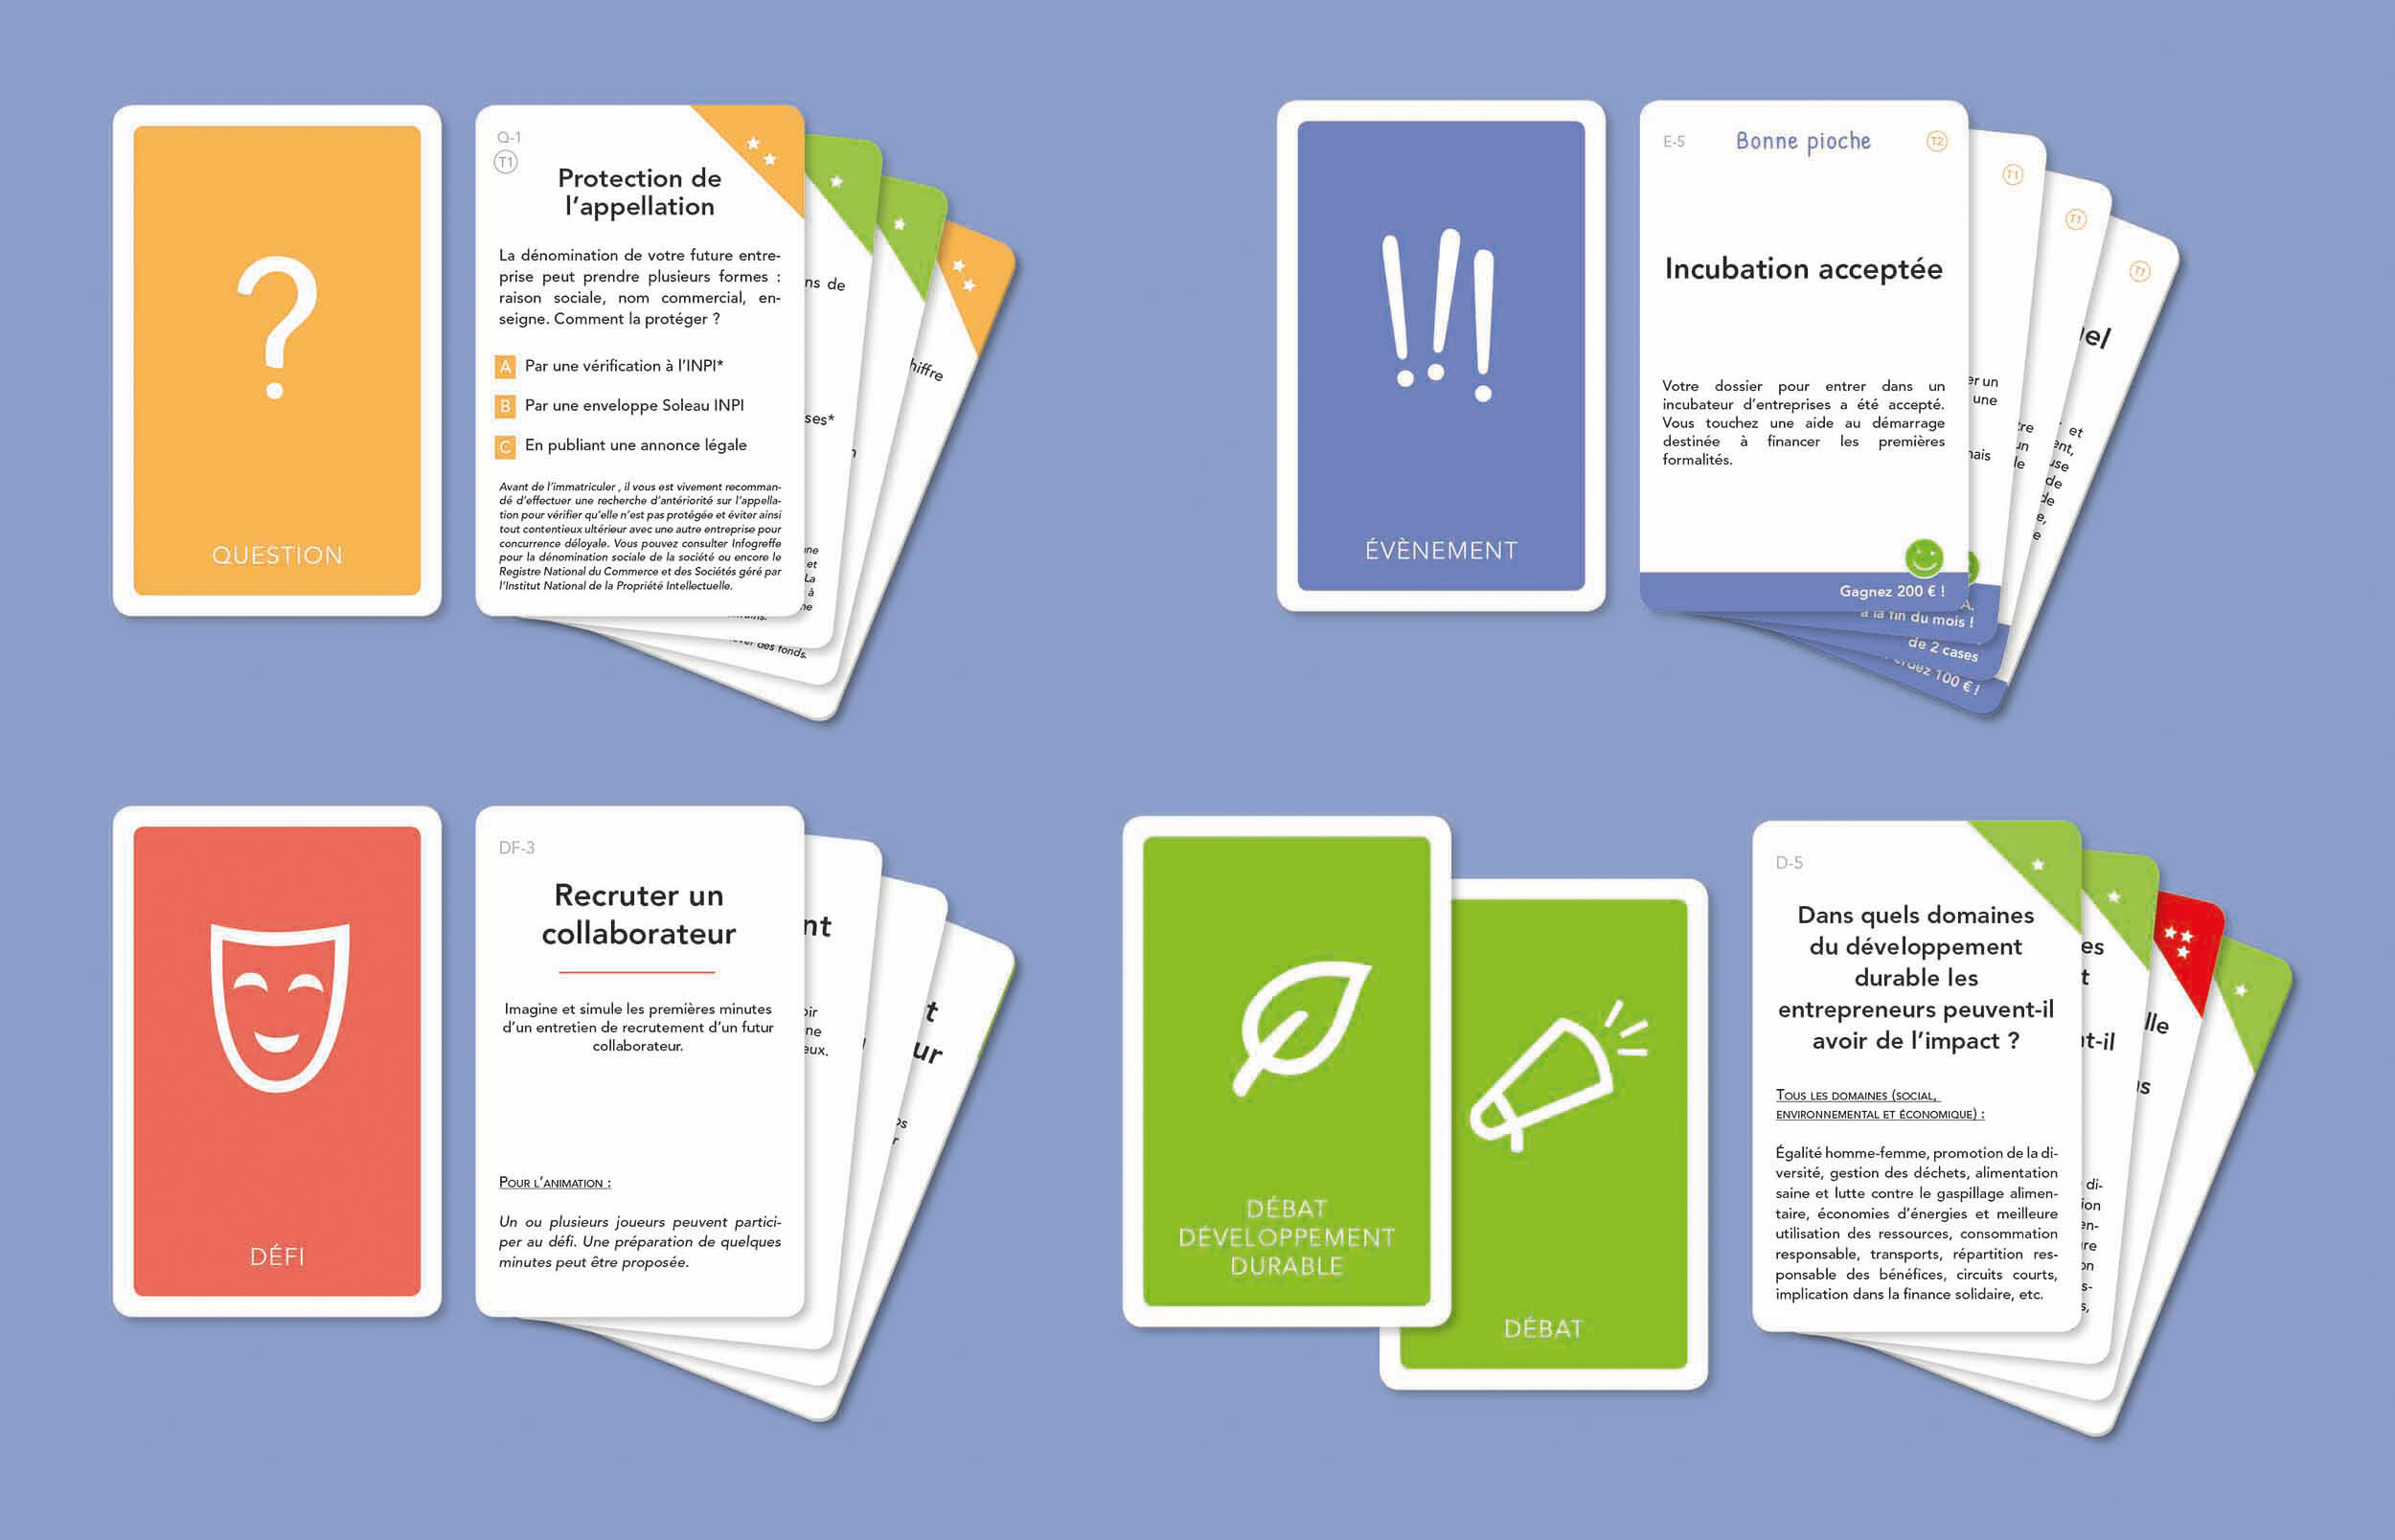 Présentation des différentes piles de cartes à jouer : cartes Question, Evènement, Défi, Débat, Développement durable